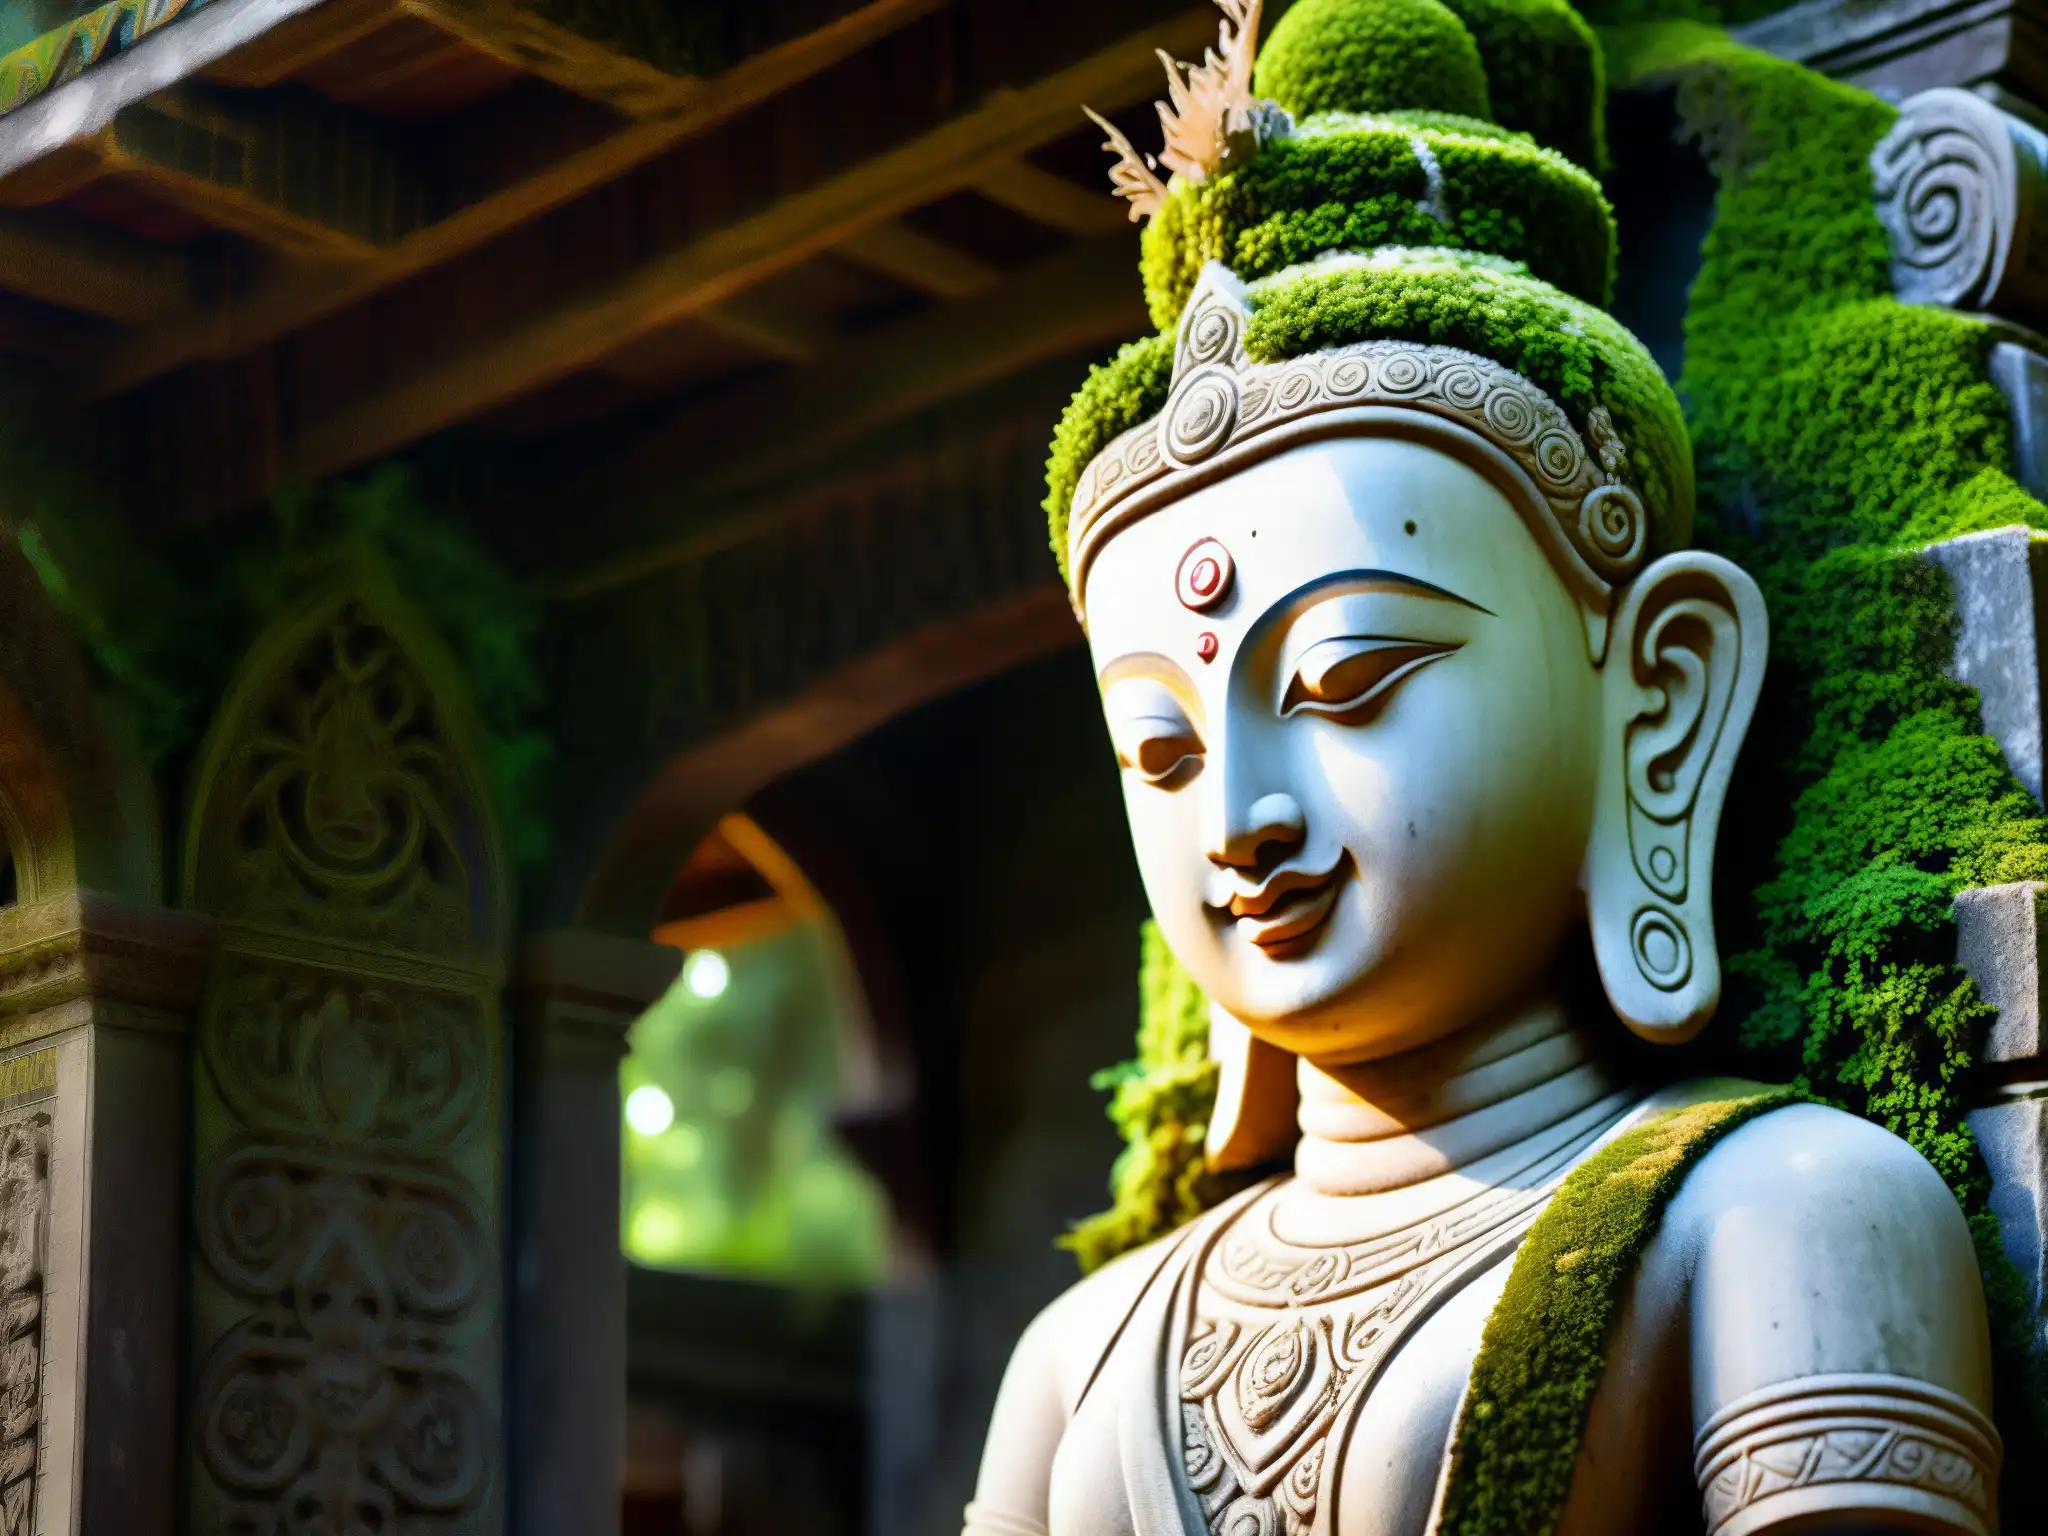 Estatua de deidad en templo abandonado de Nepal, iluminada por luz tenue, con atmósfera misteriosa y espiritual